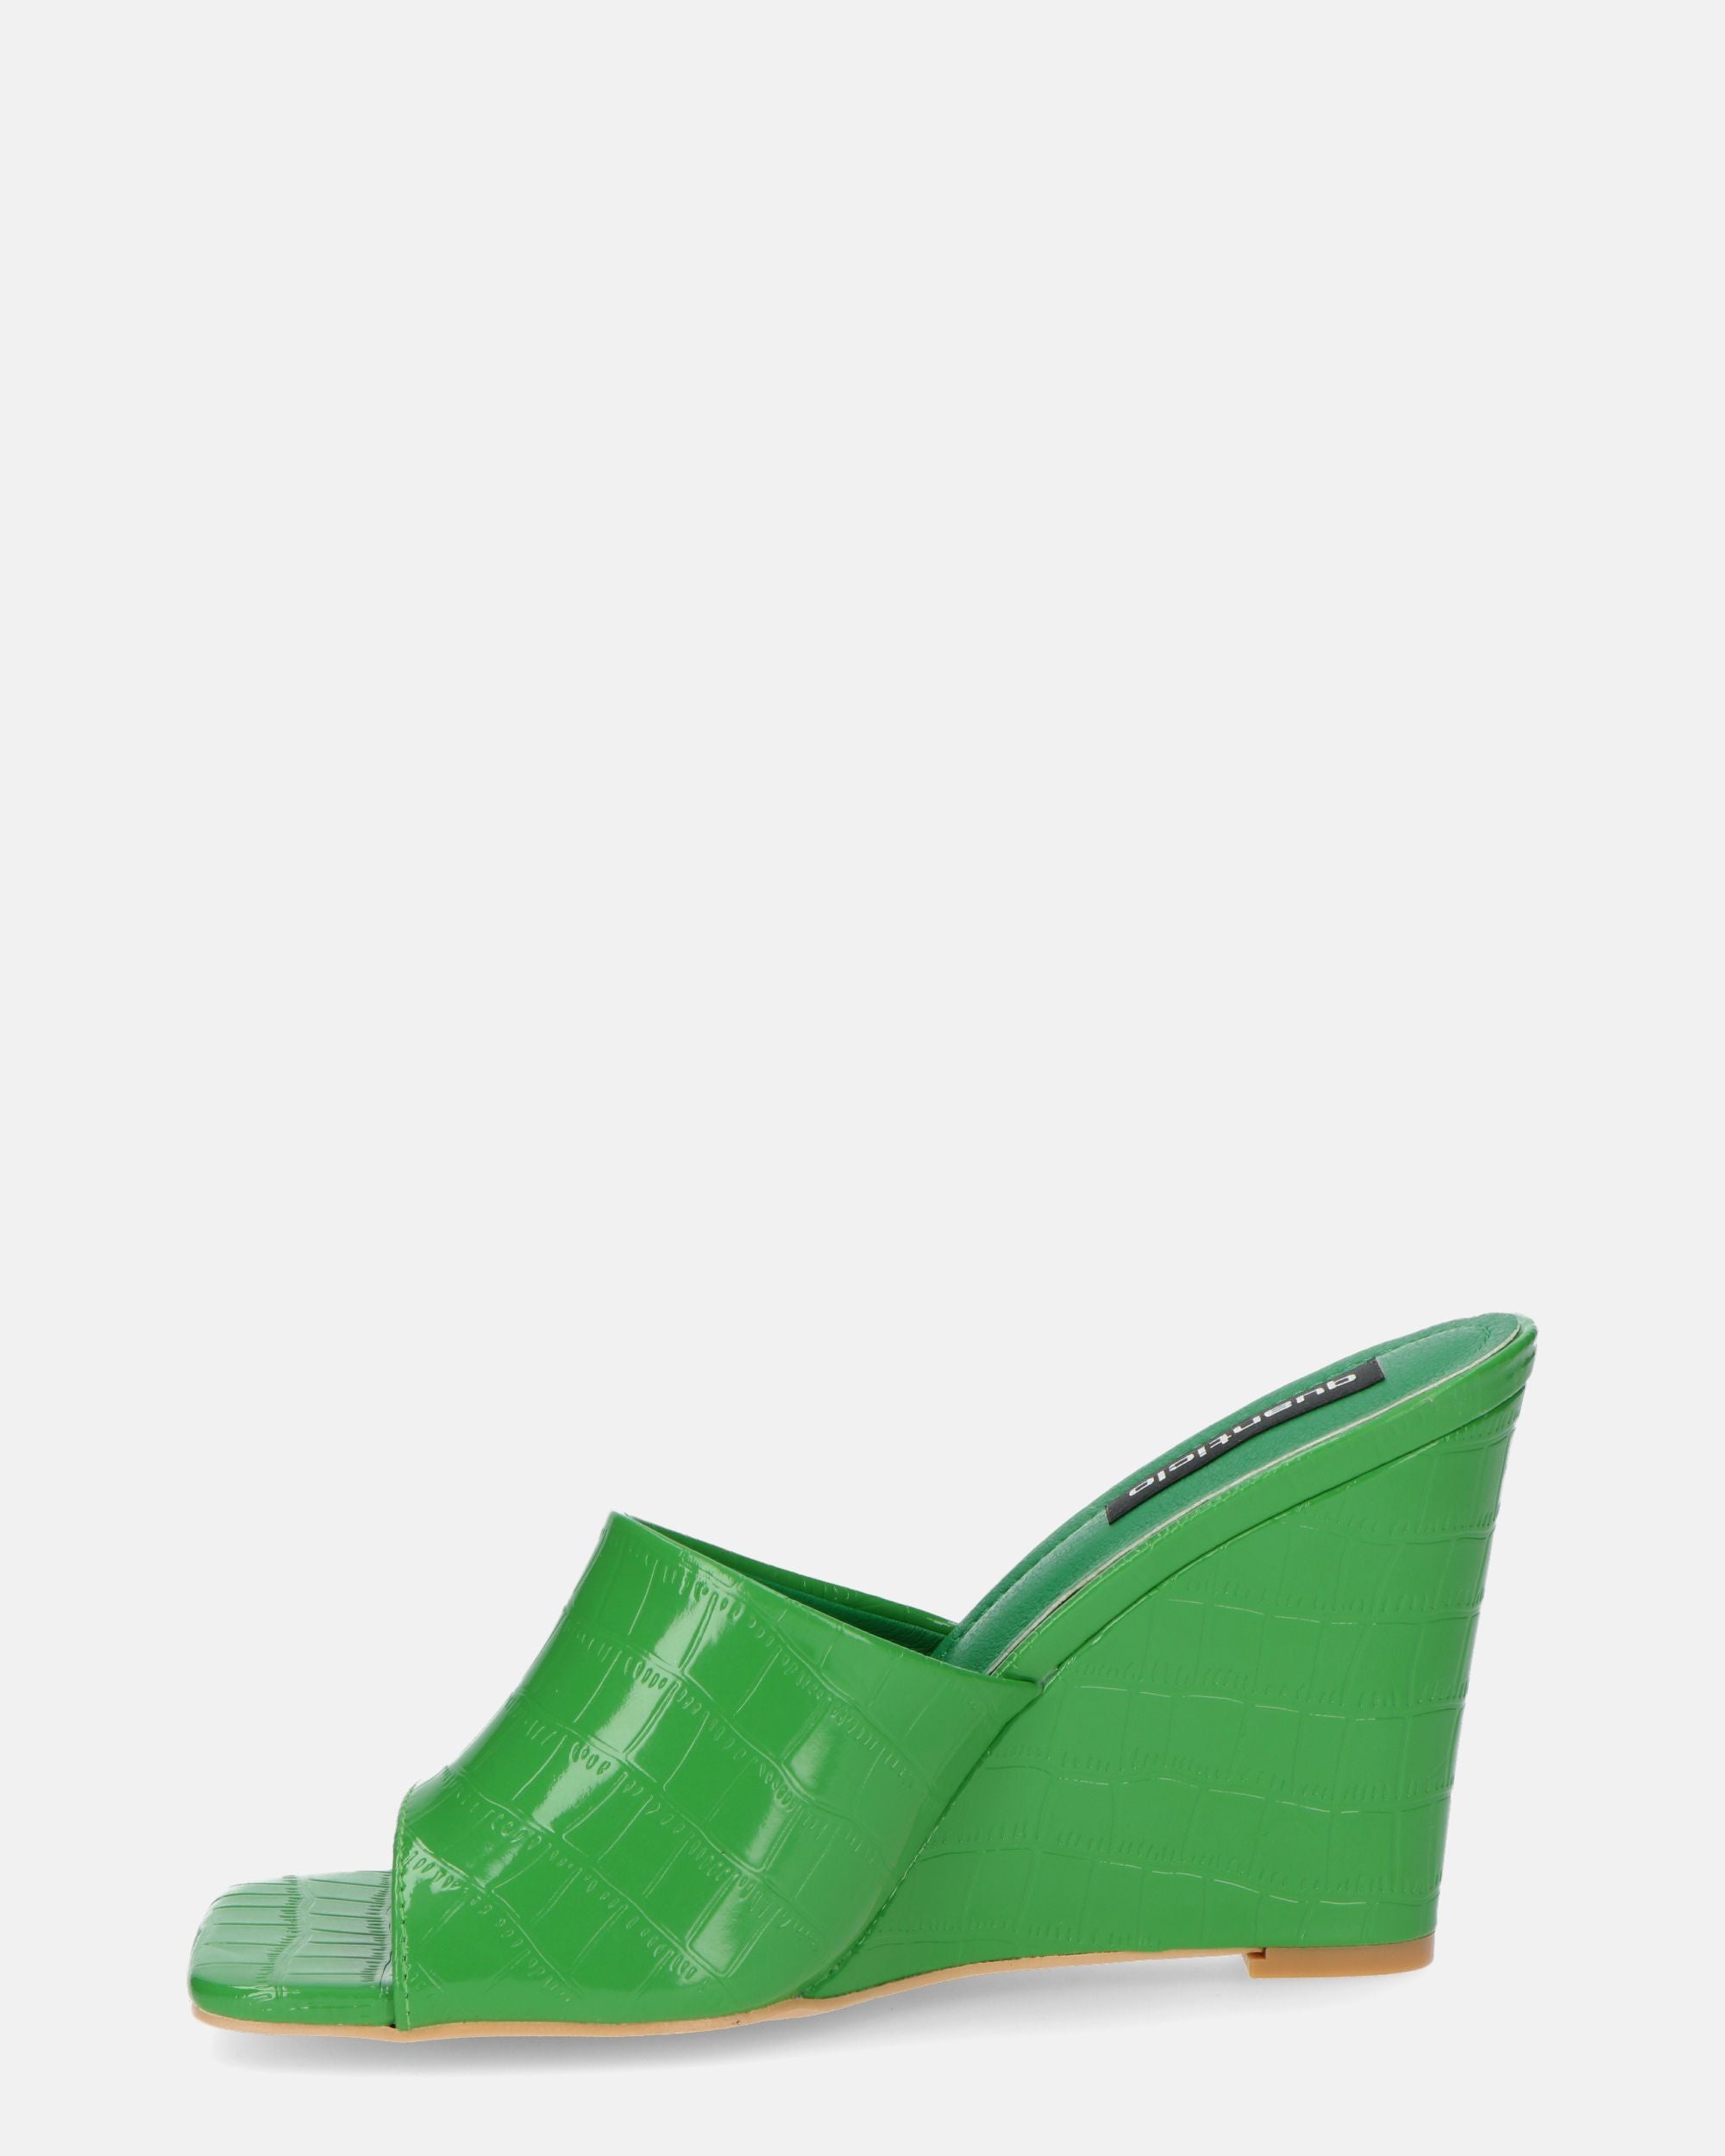 MARGHERITA - sandalias cuña en glassy verde cocodrilo